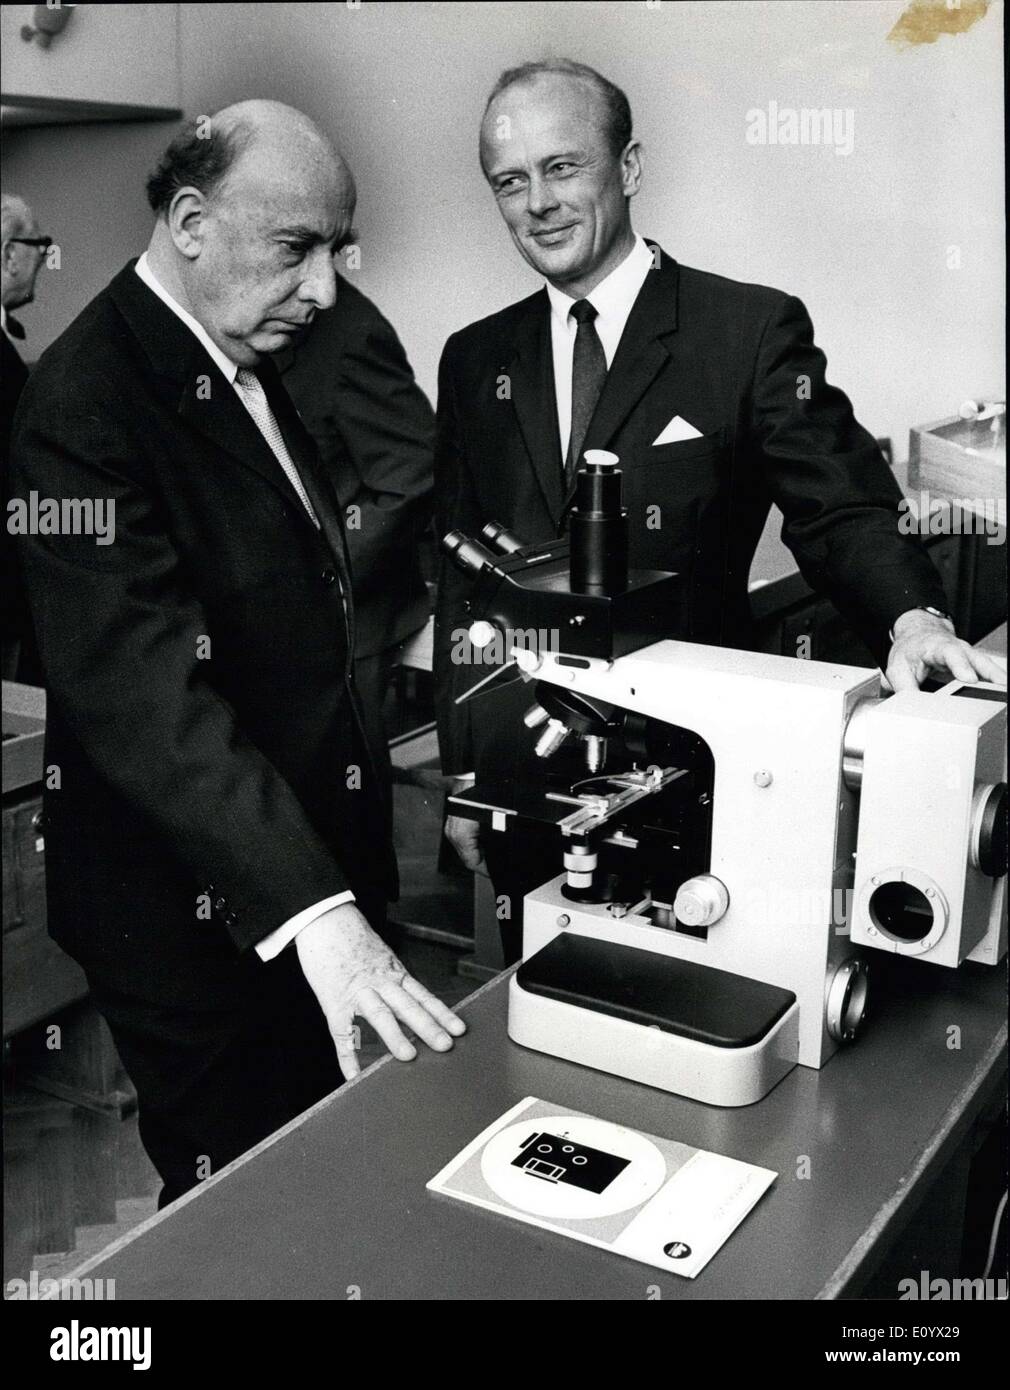 Sett. 03, 1971 - Ogni 100.000 ricerca microscopio costruito dalla Ditta Ernst Leitz in Germania Ovest, è dal 1899 donati per gli scienziati che lavorano nel campo della luce ricerca microscopica e chi ha contribuito al biologico e la scienza medica. L'anno il microscopio è stato dato lo scienziato, il professor Bengt Falck, Lund, Svezia. Il Professor Falck è stato eletto dopo thorougly in vestigations da circoli scientifici di tutto il mondo ed è stato premiato con microscopio nr. 800.000 Foto Stock